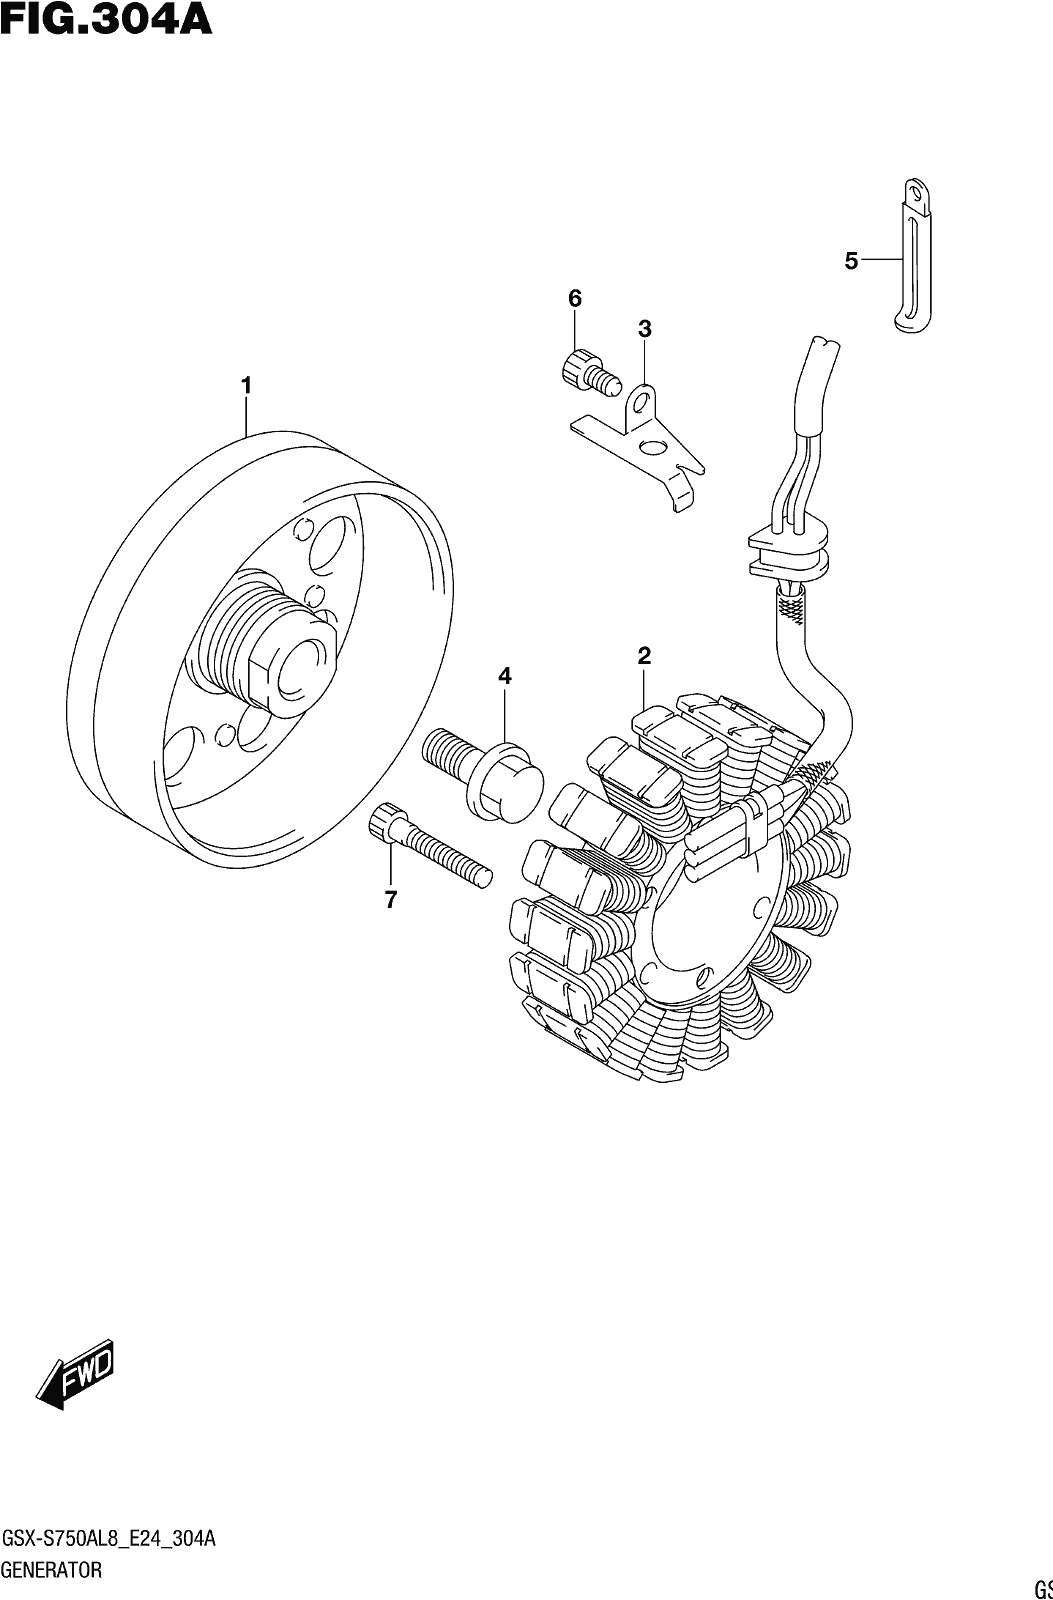 Fig.304a Generator